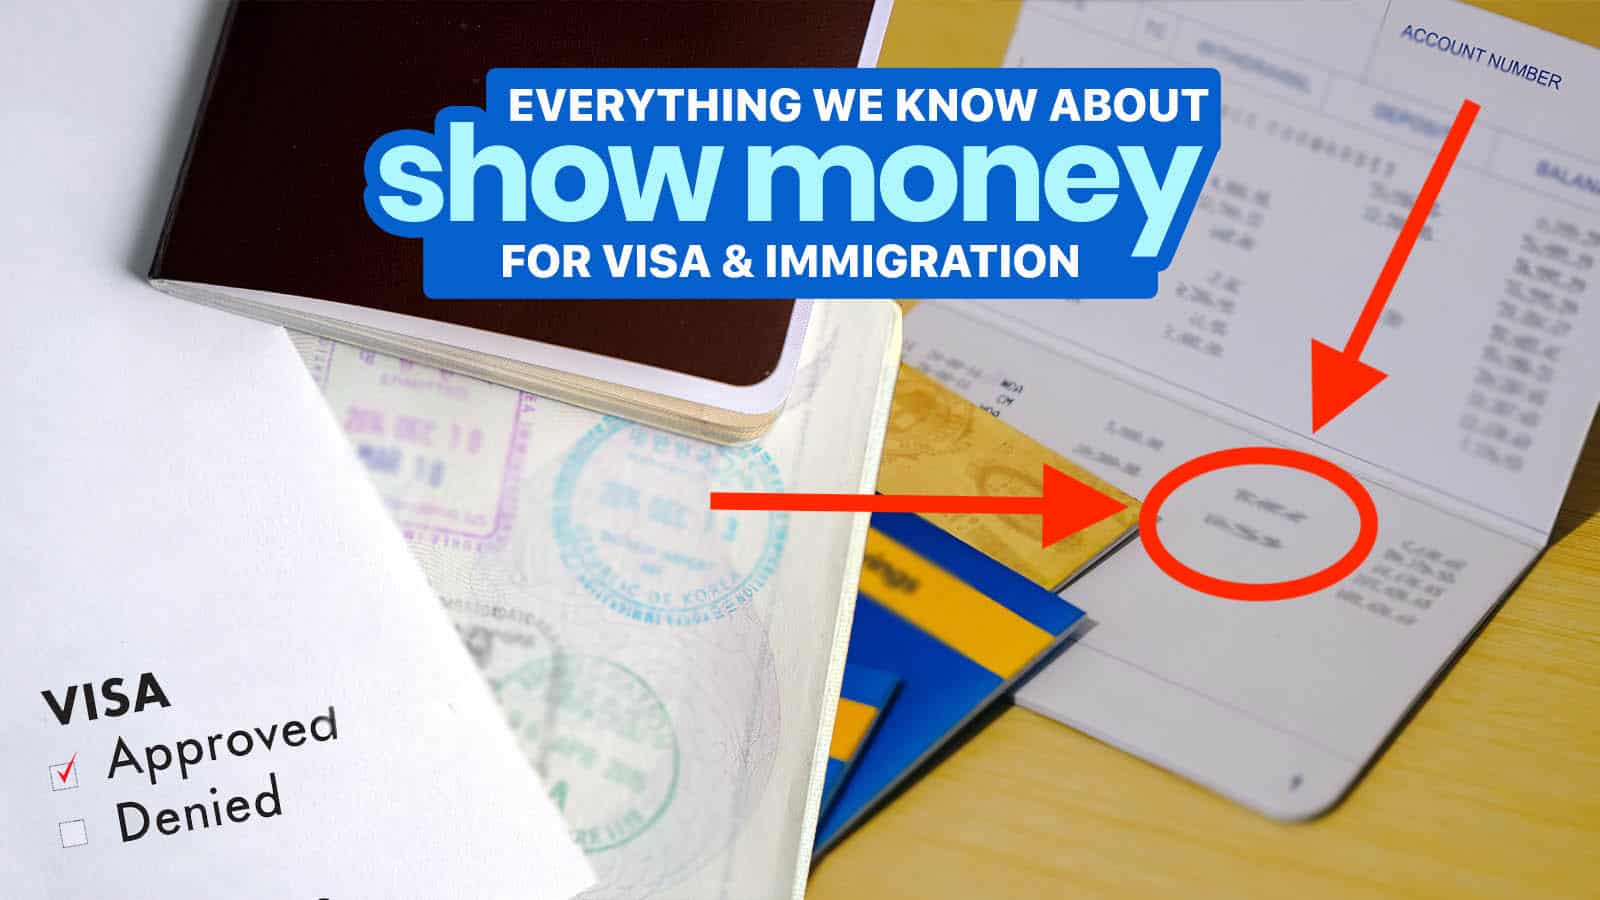 为签证申请和移民展示金钱:我们目前所知道的一切